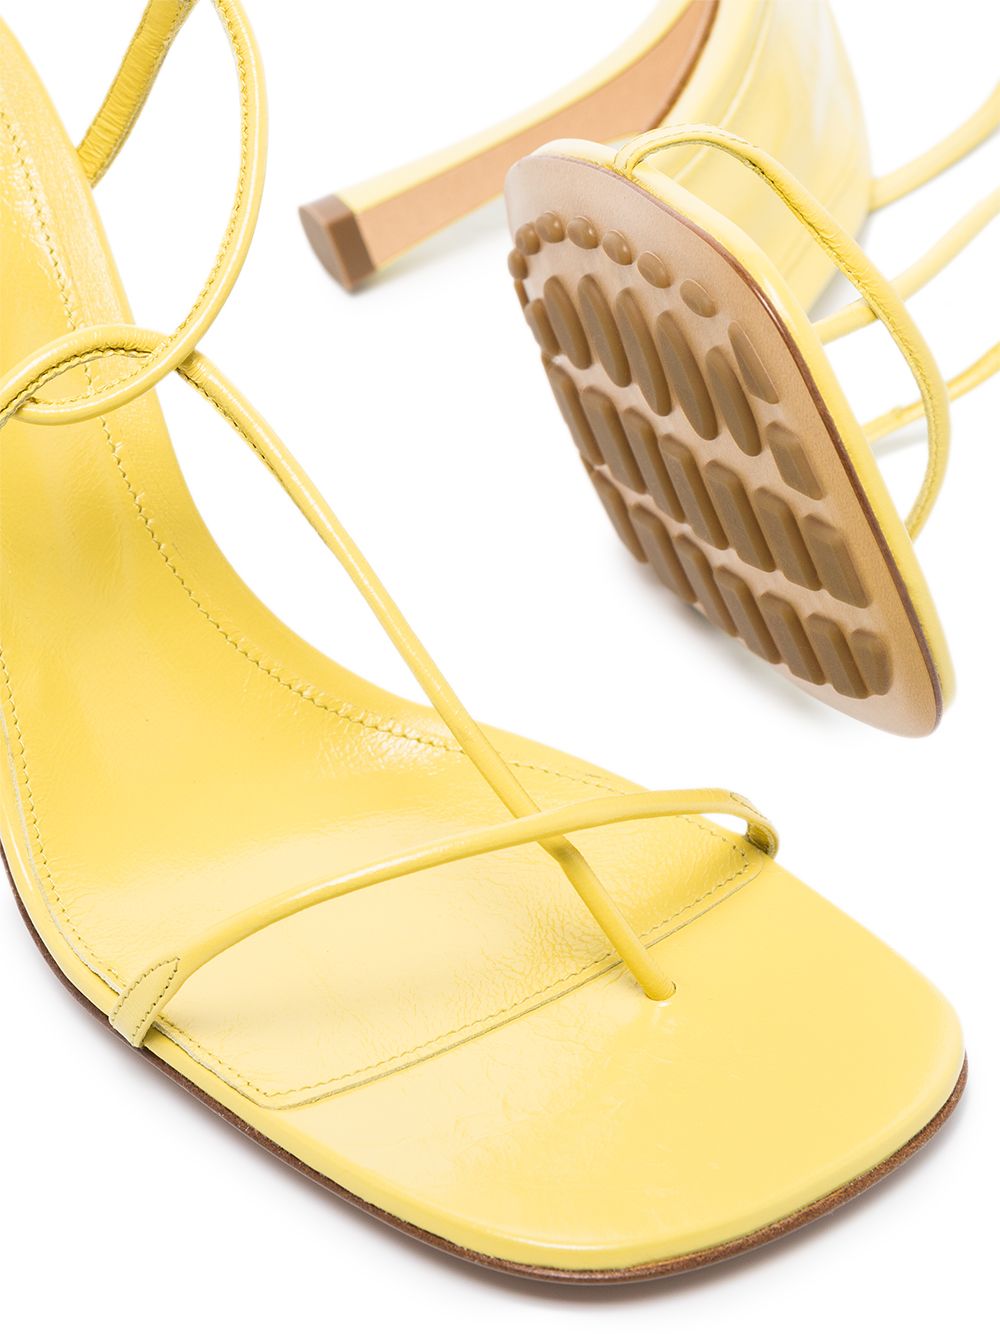 фото Bottega veneta босоножки на каблуке